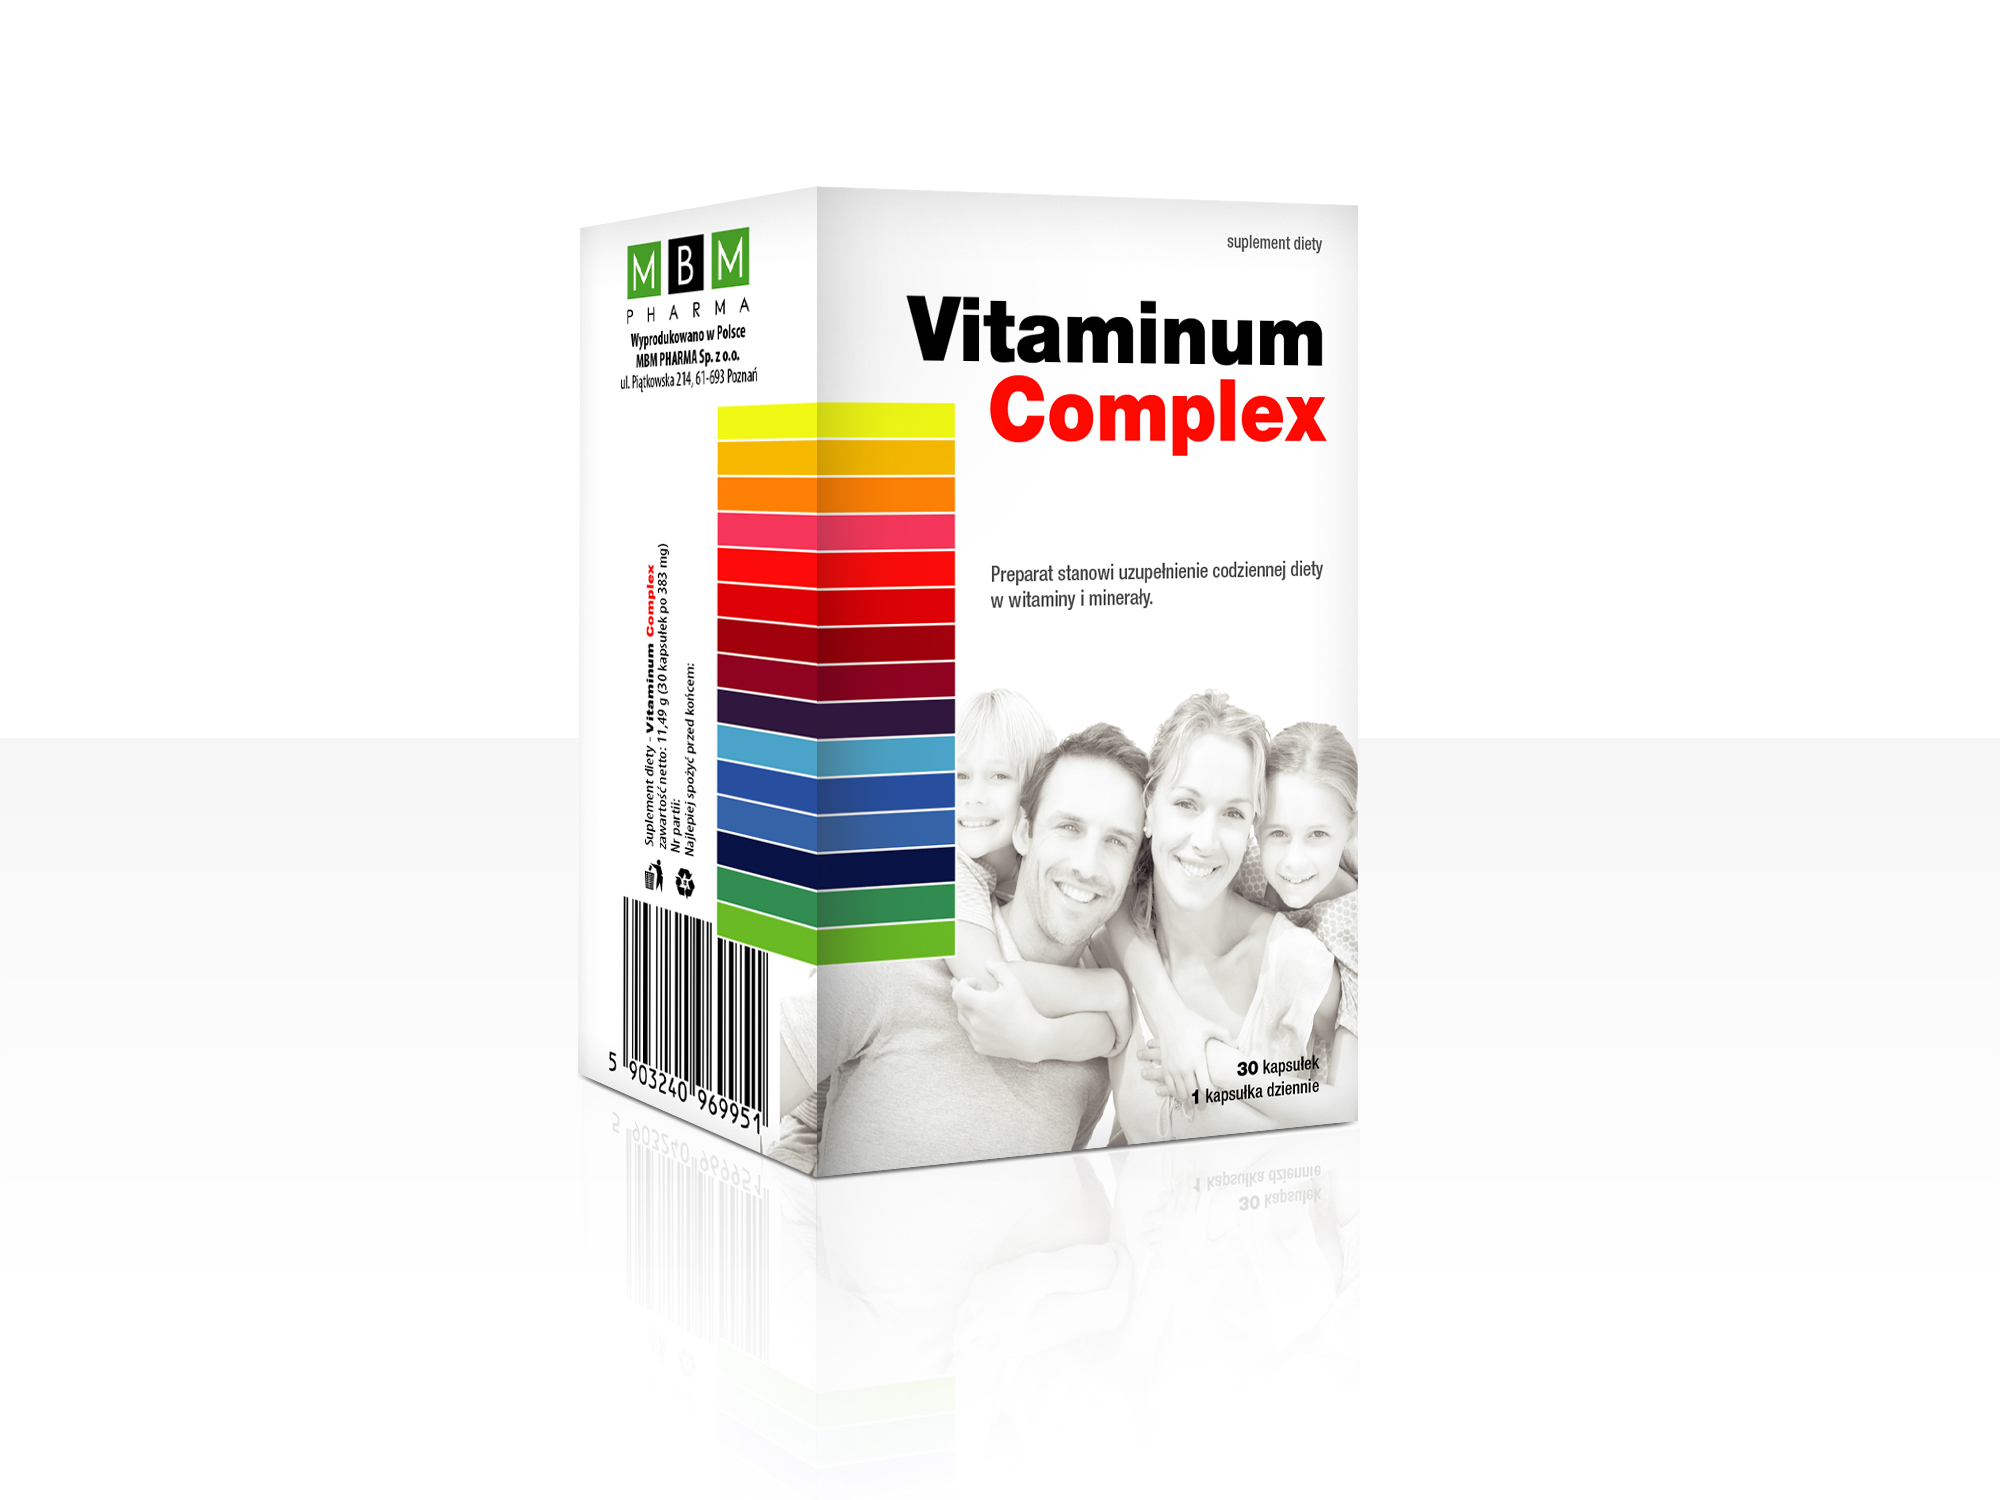 Vitaminum Complex - uzupełnienie codziennej diety w witaminy i minerały